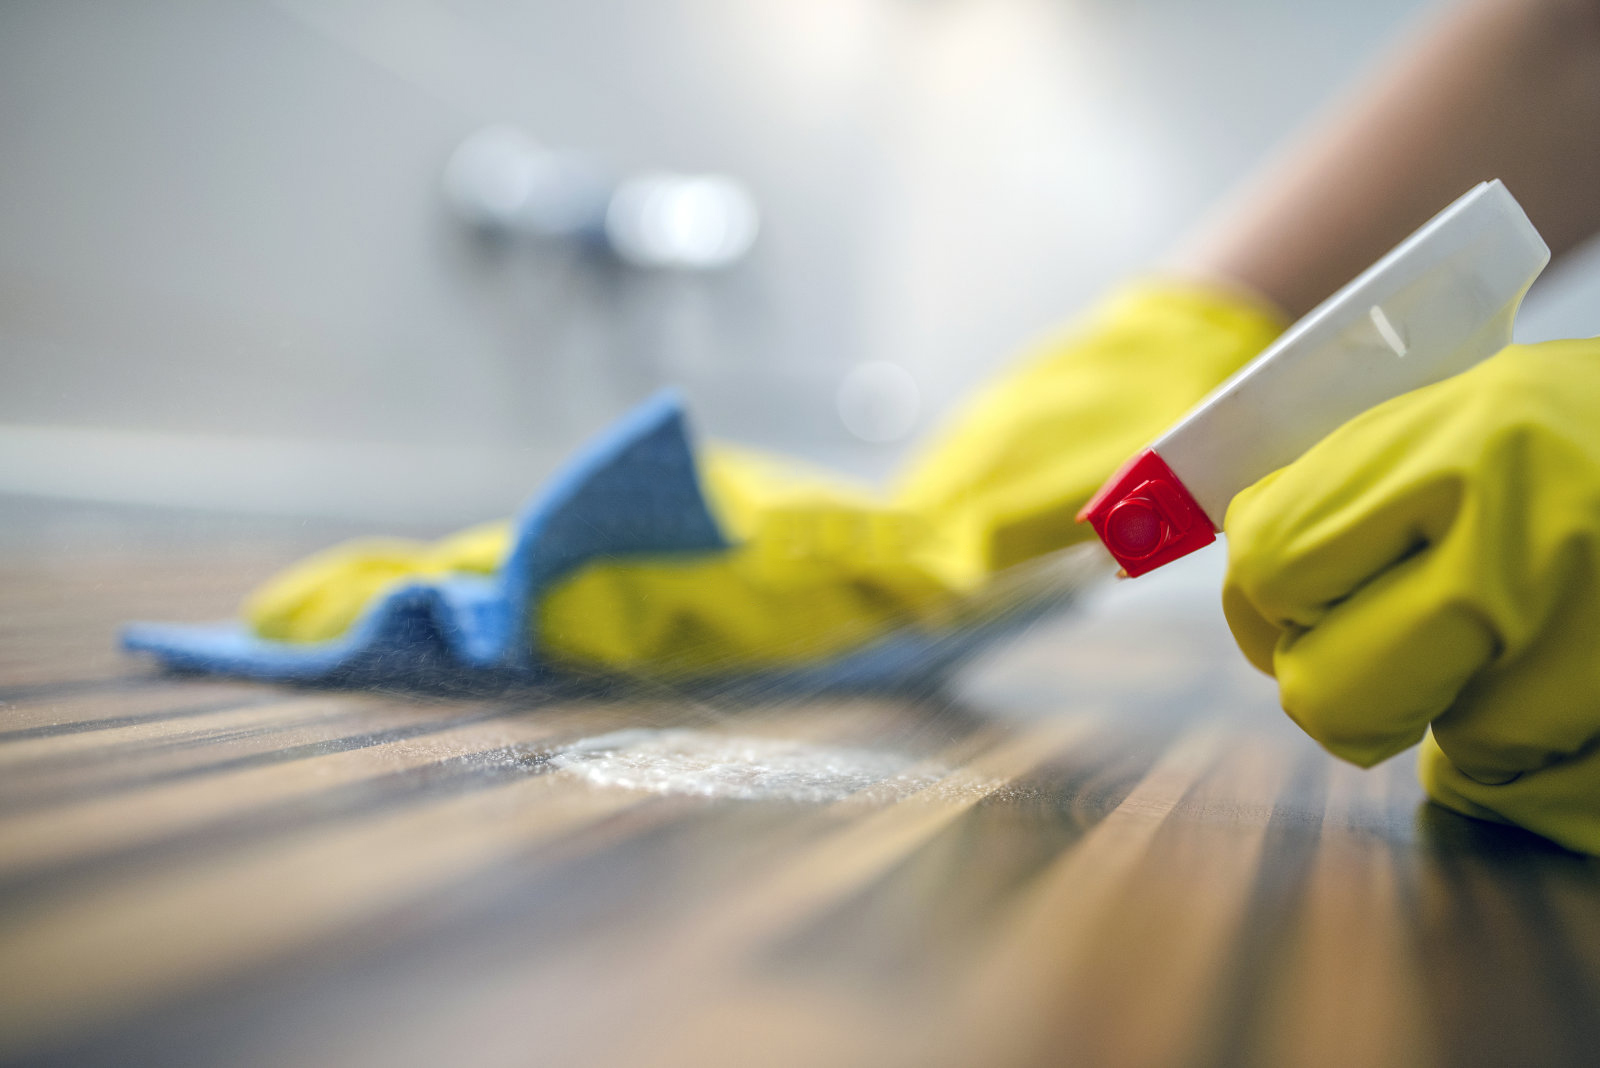 Fotografia ženy, ktorá čistí kuchynské skrinky špongiou a čističom v spreji.Žena používa sprejový čistič na drevený povrch.Slúžka utierajúci prach pomocou spreja a prachovky pri upratovaní domu v žltých ochranných rukaviciach, detail